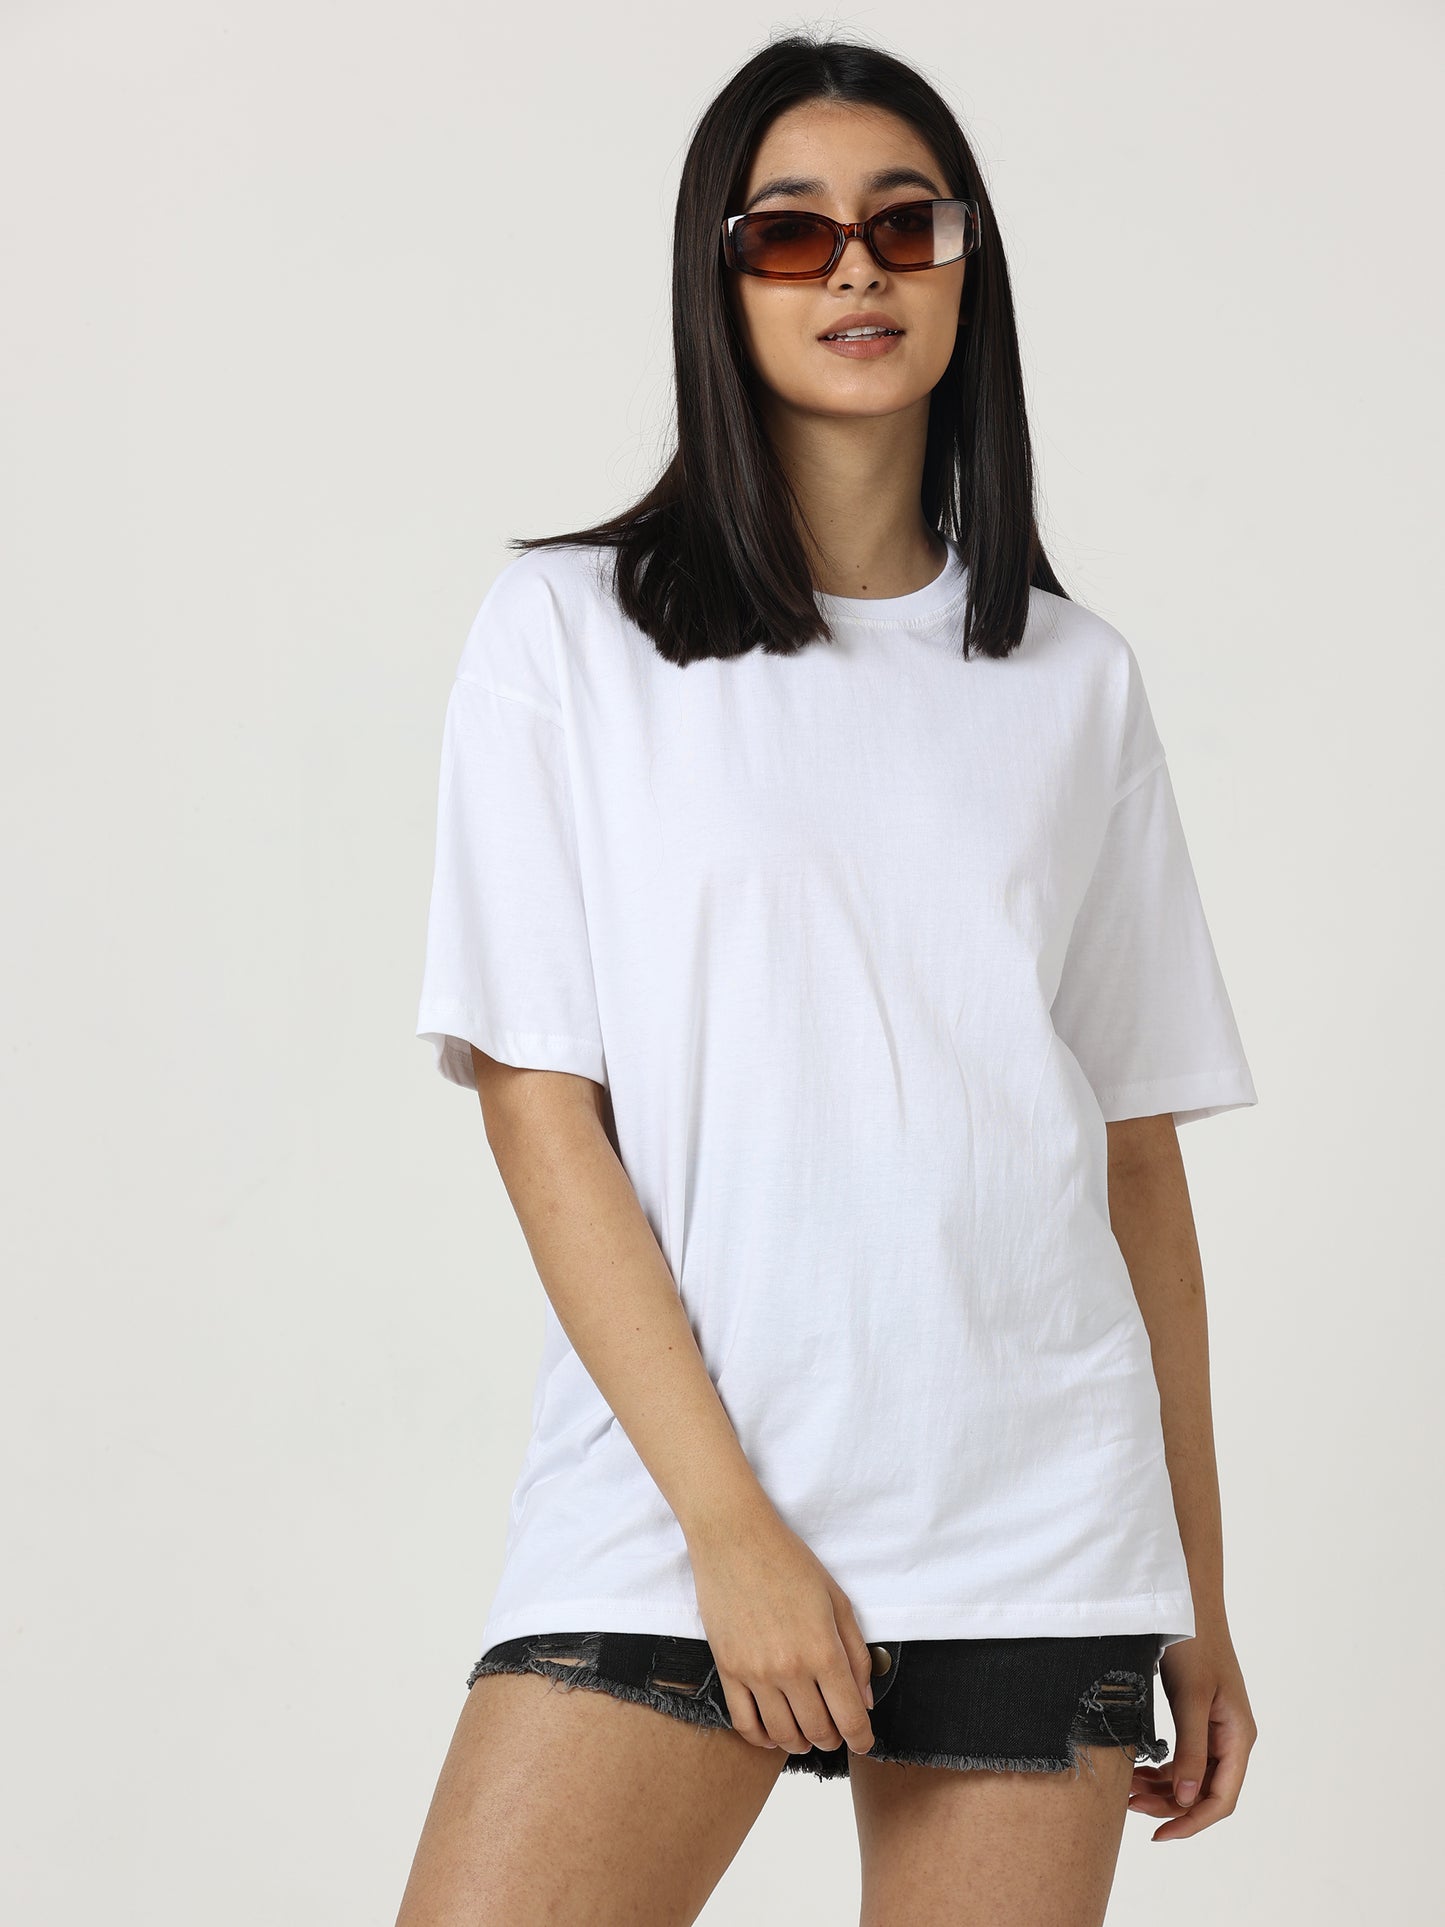 White Oversized T-shirt - UNISEX